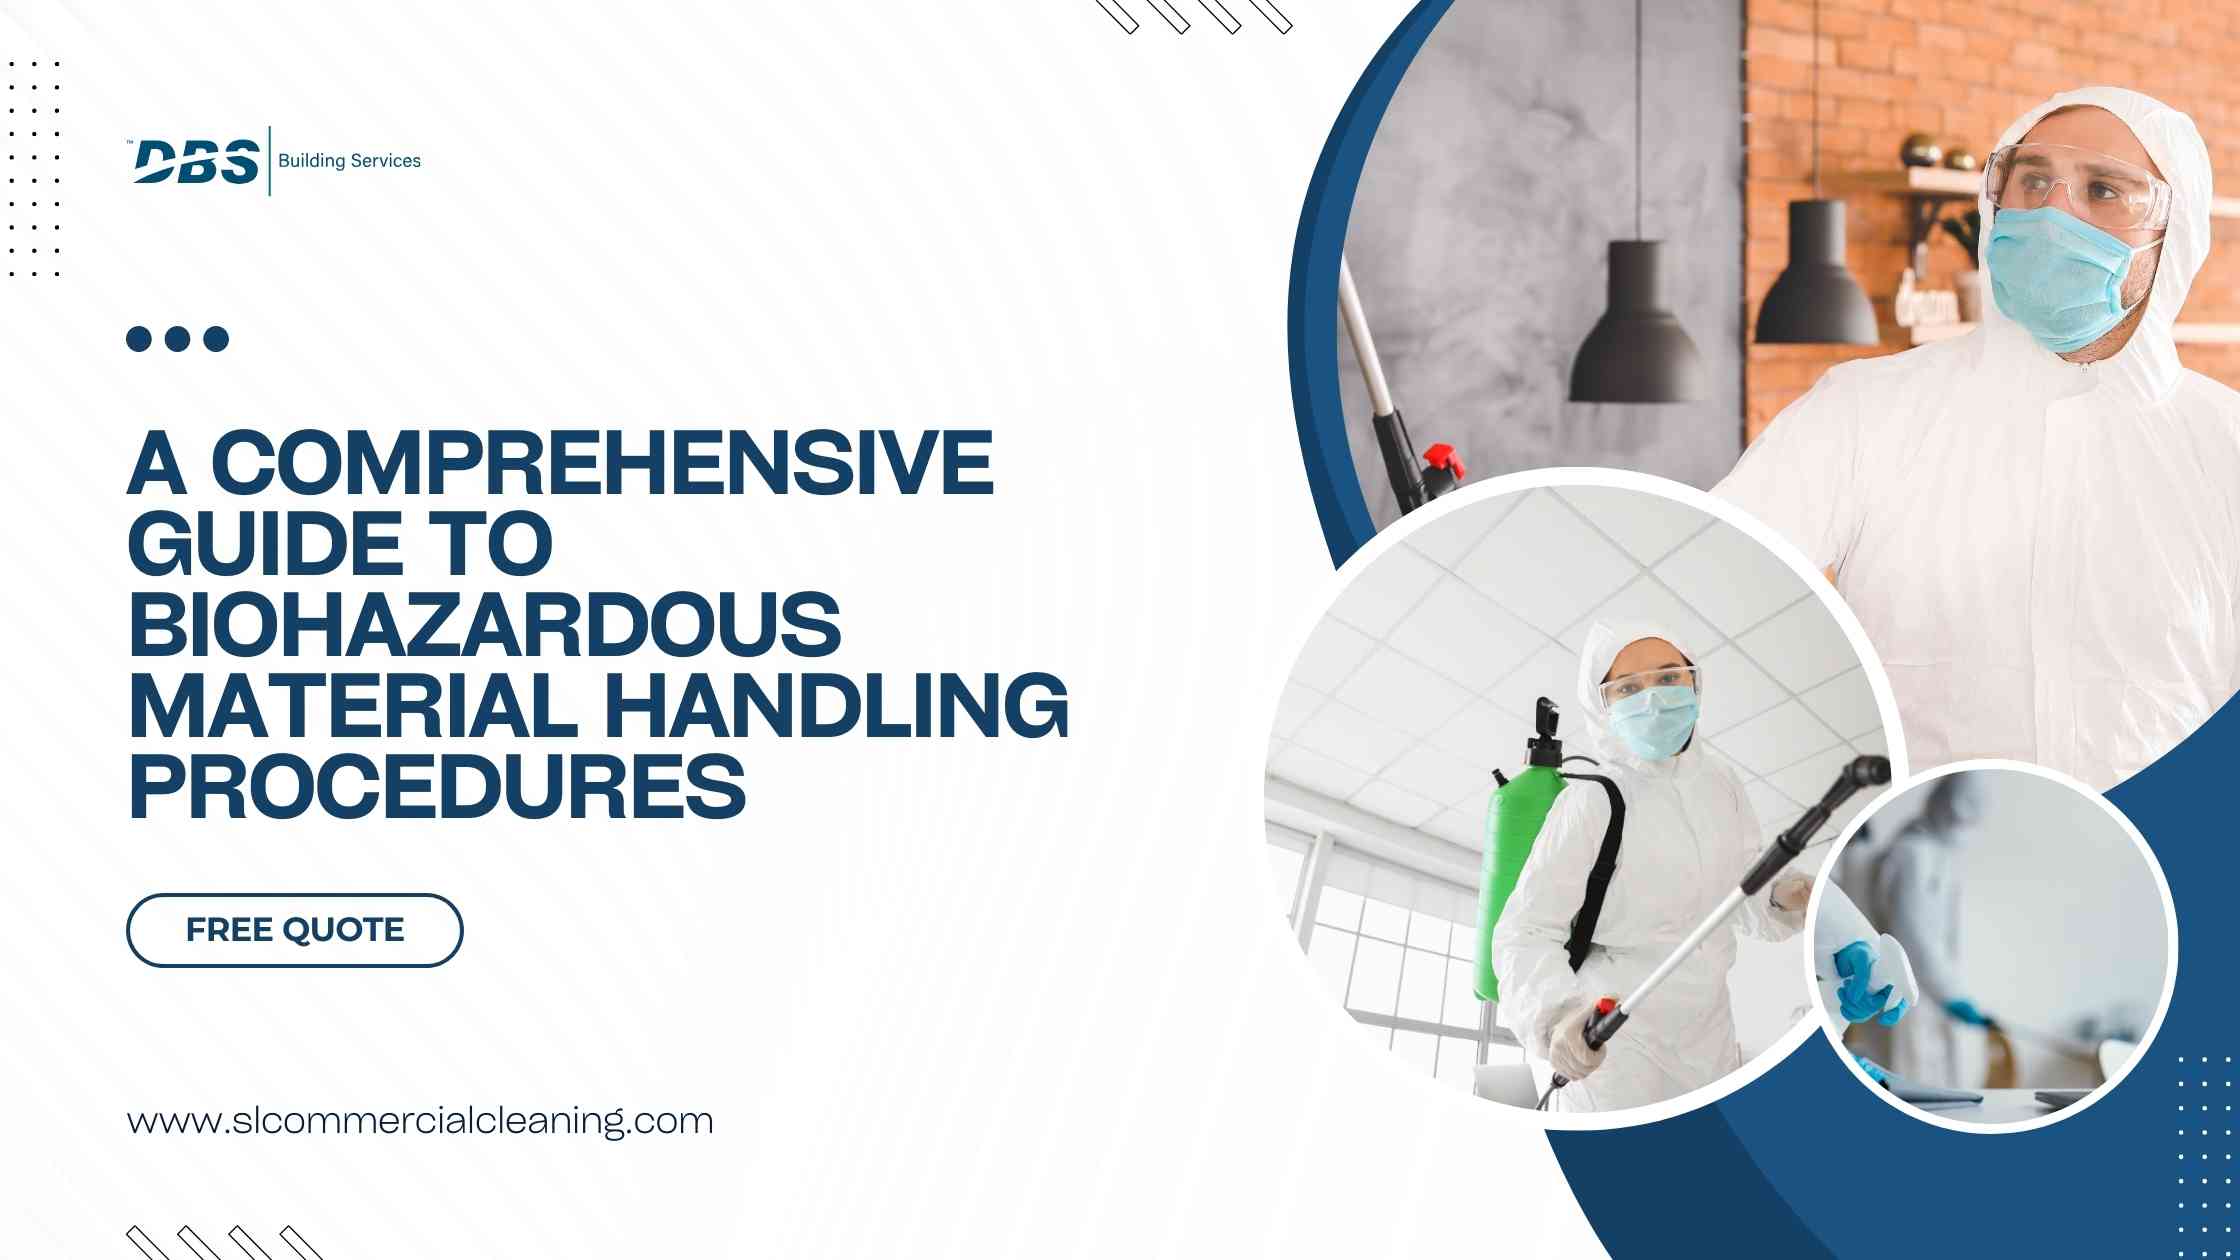 Biohazardous Material Handling Procedures